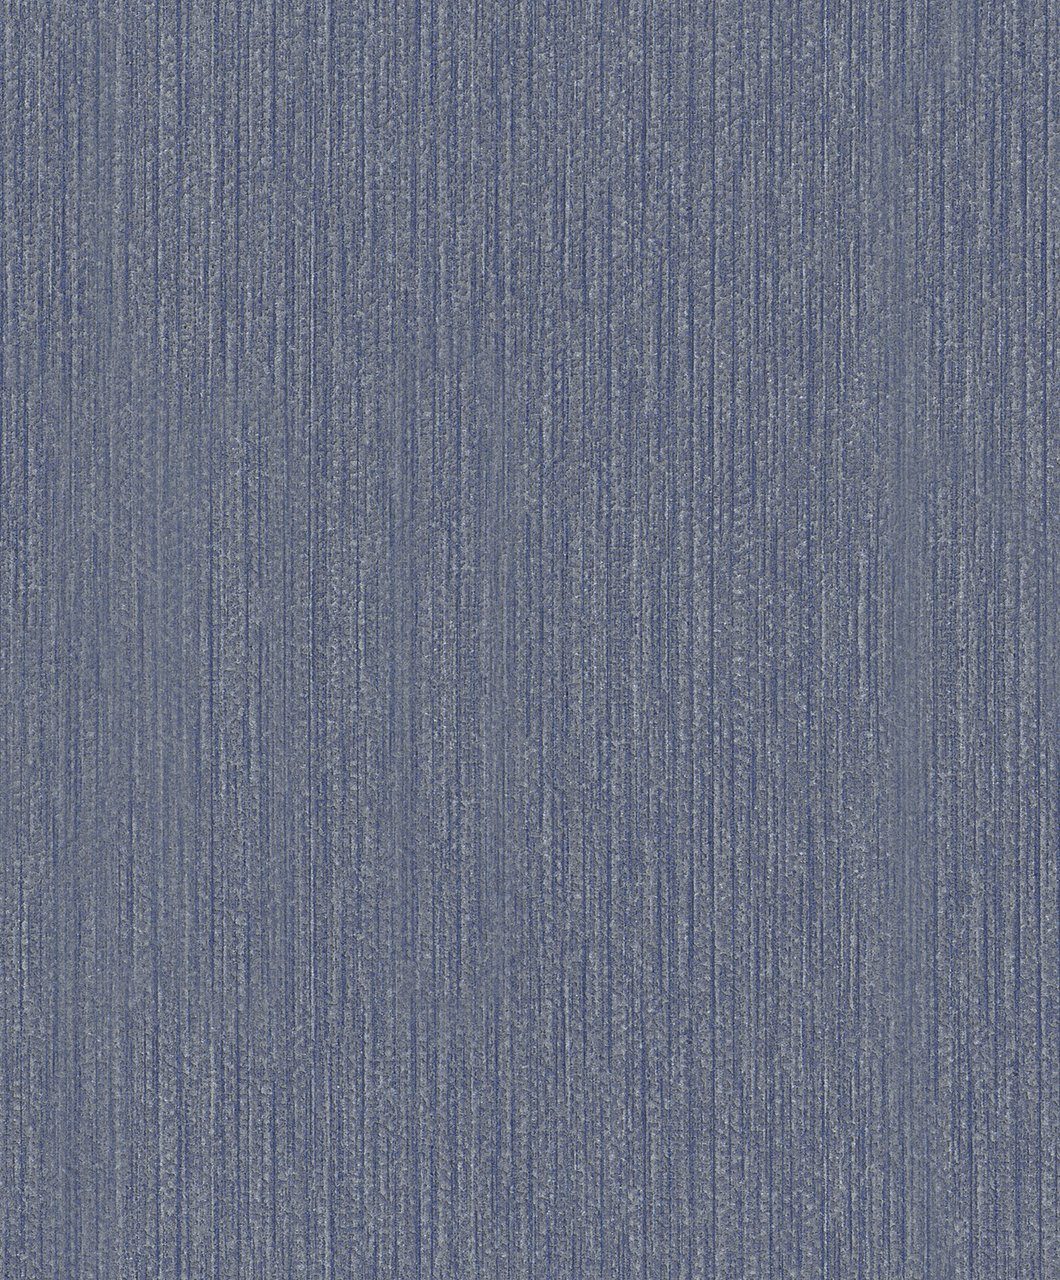 SCHÖNER WOHNEN-Kollektion Vliestapete, realistisch, 0,53 x 10,05 Meter dunkelblau